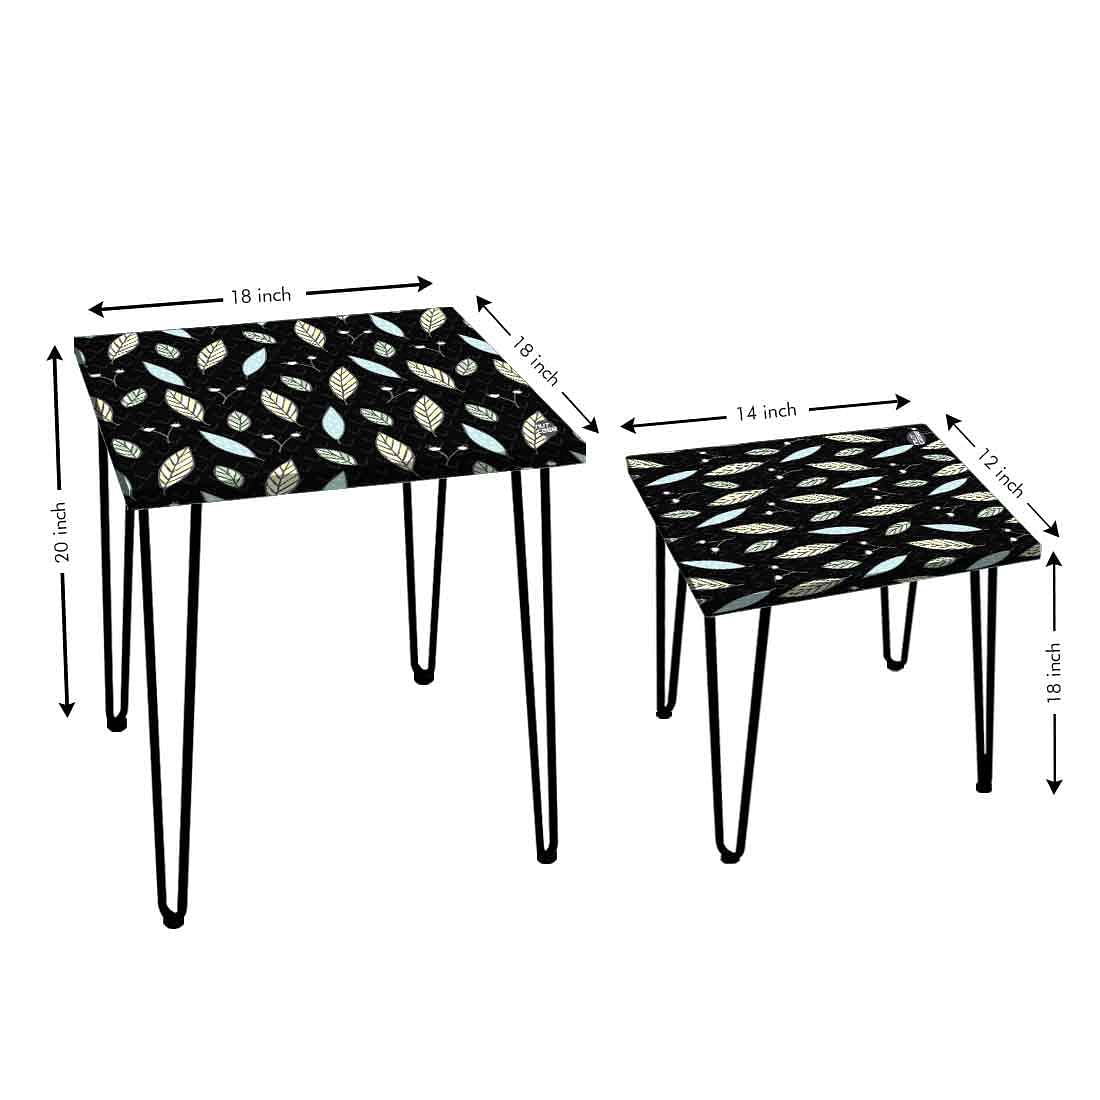 Designer Nest of Two Tables for Side Table Living Room & Home Decor - Leaf Nutcase